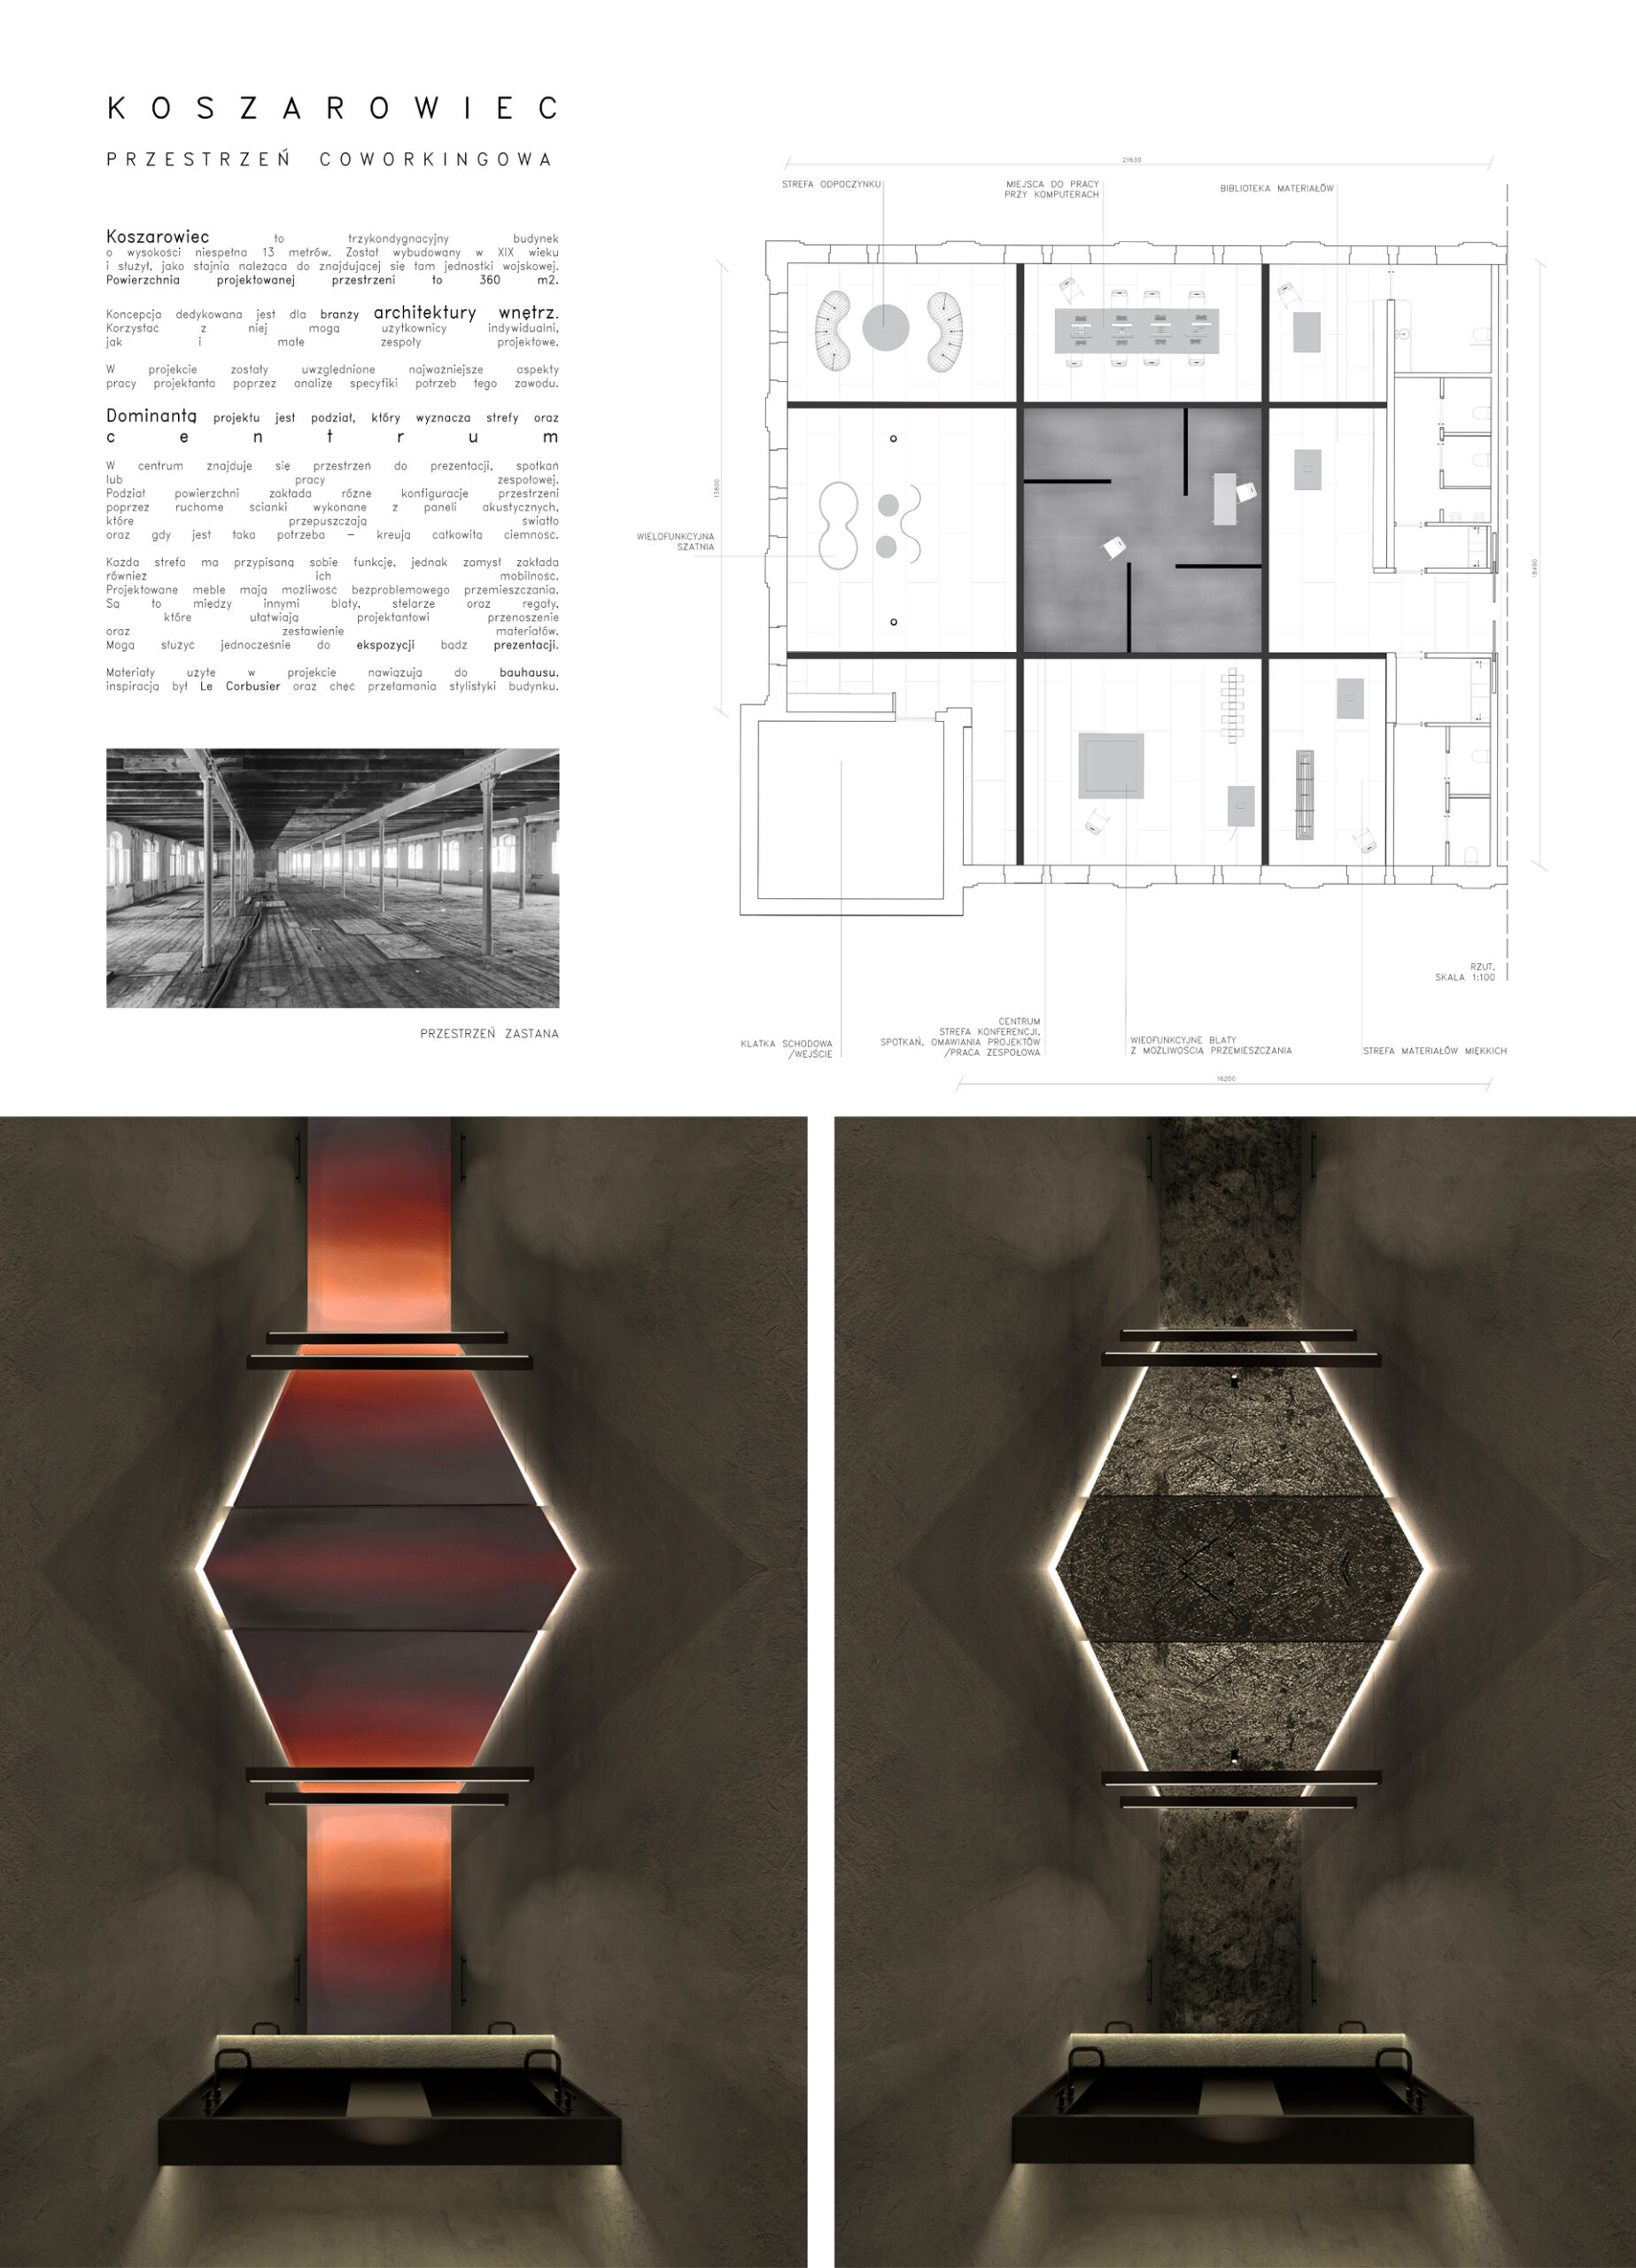 Plansza przedstawia od lewej opis projektu z czarno białym zdjęciem zastanej przestrzeni oraz rzut z układem funkcjonalnym. Poniżej znajduje się dwie wizualizacje z projektem łazienki damskiej i męskiej.